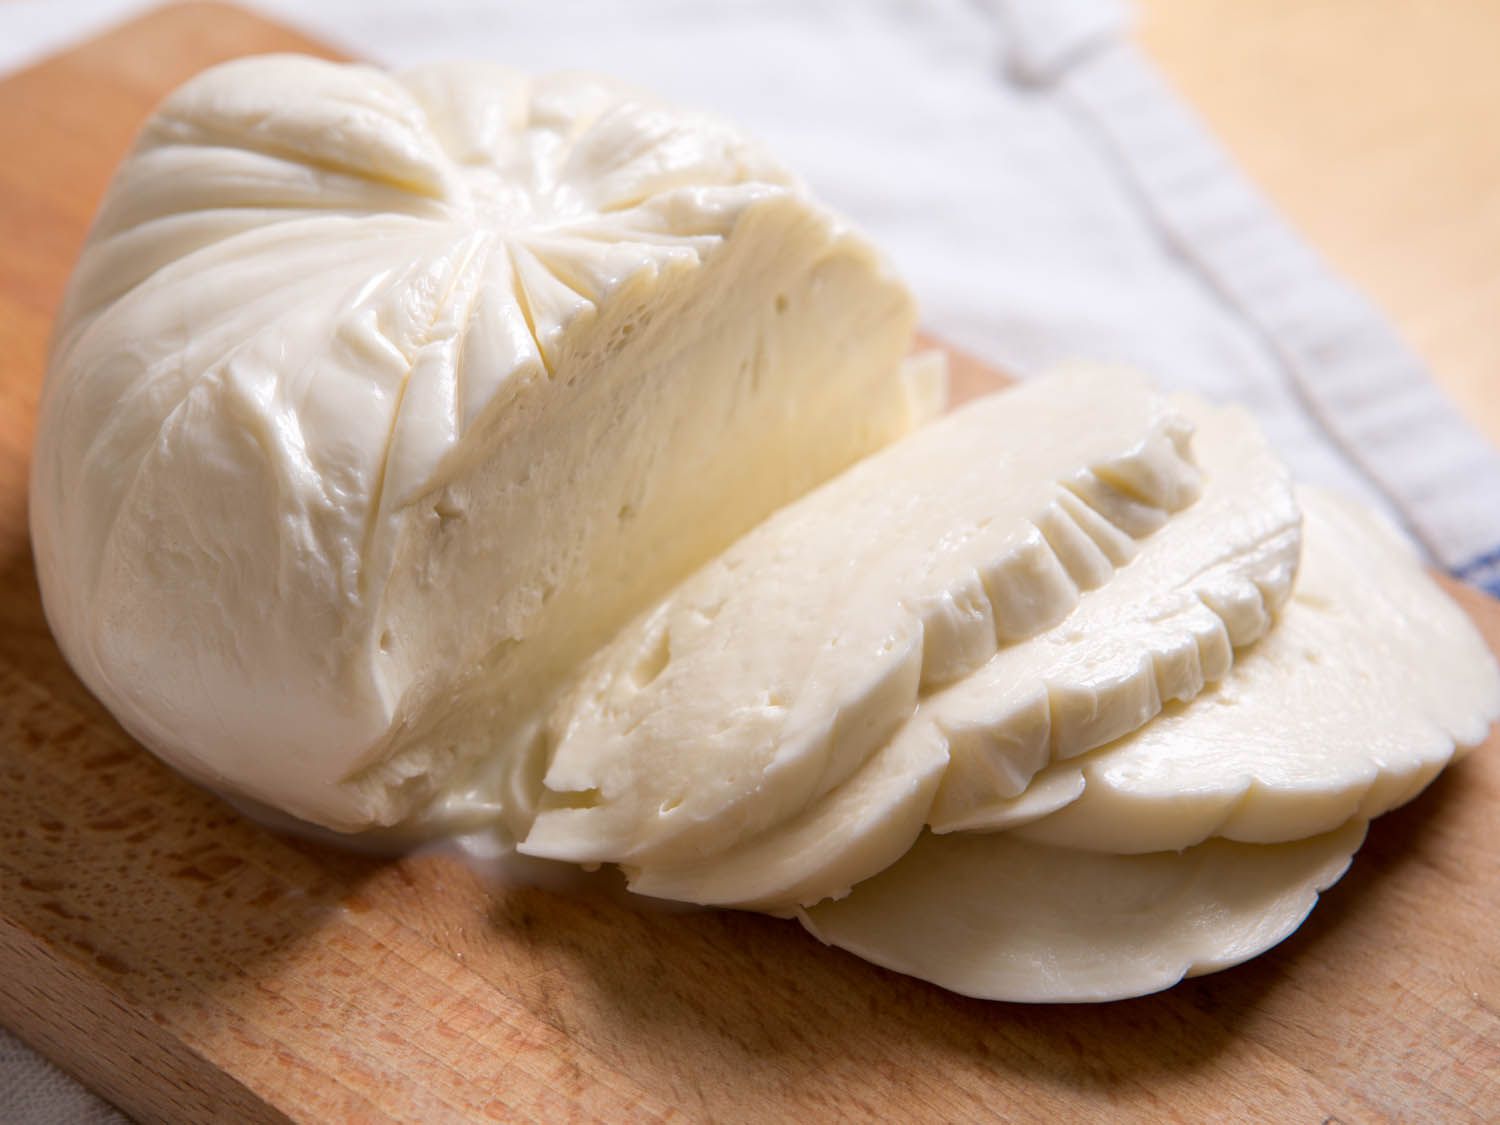 一团新鲜的马苏里拉奶酪放在砧板上。已经切了四片奶酪放在板上。